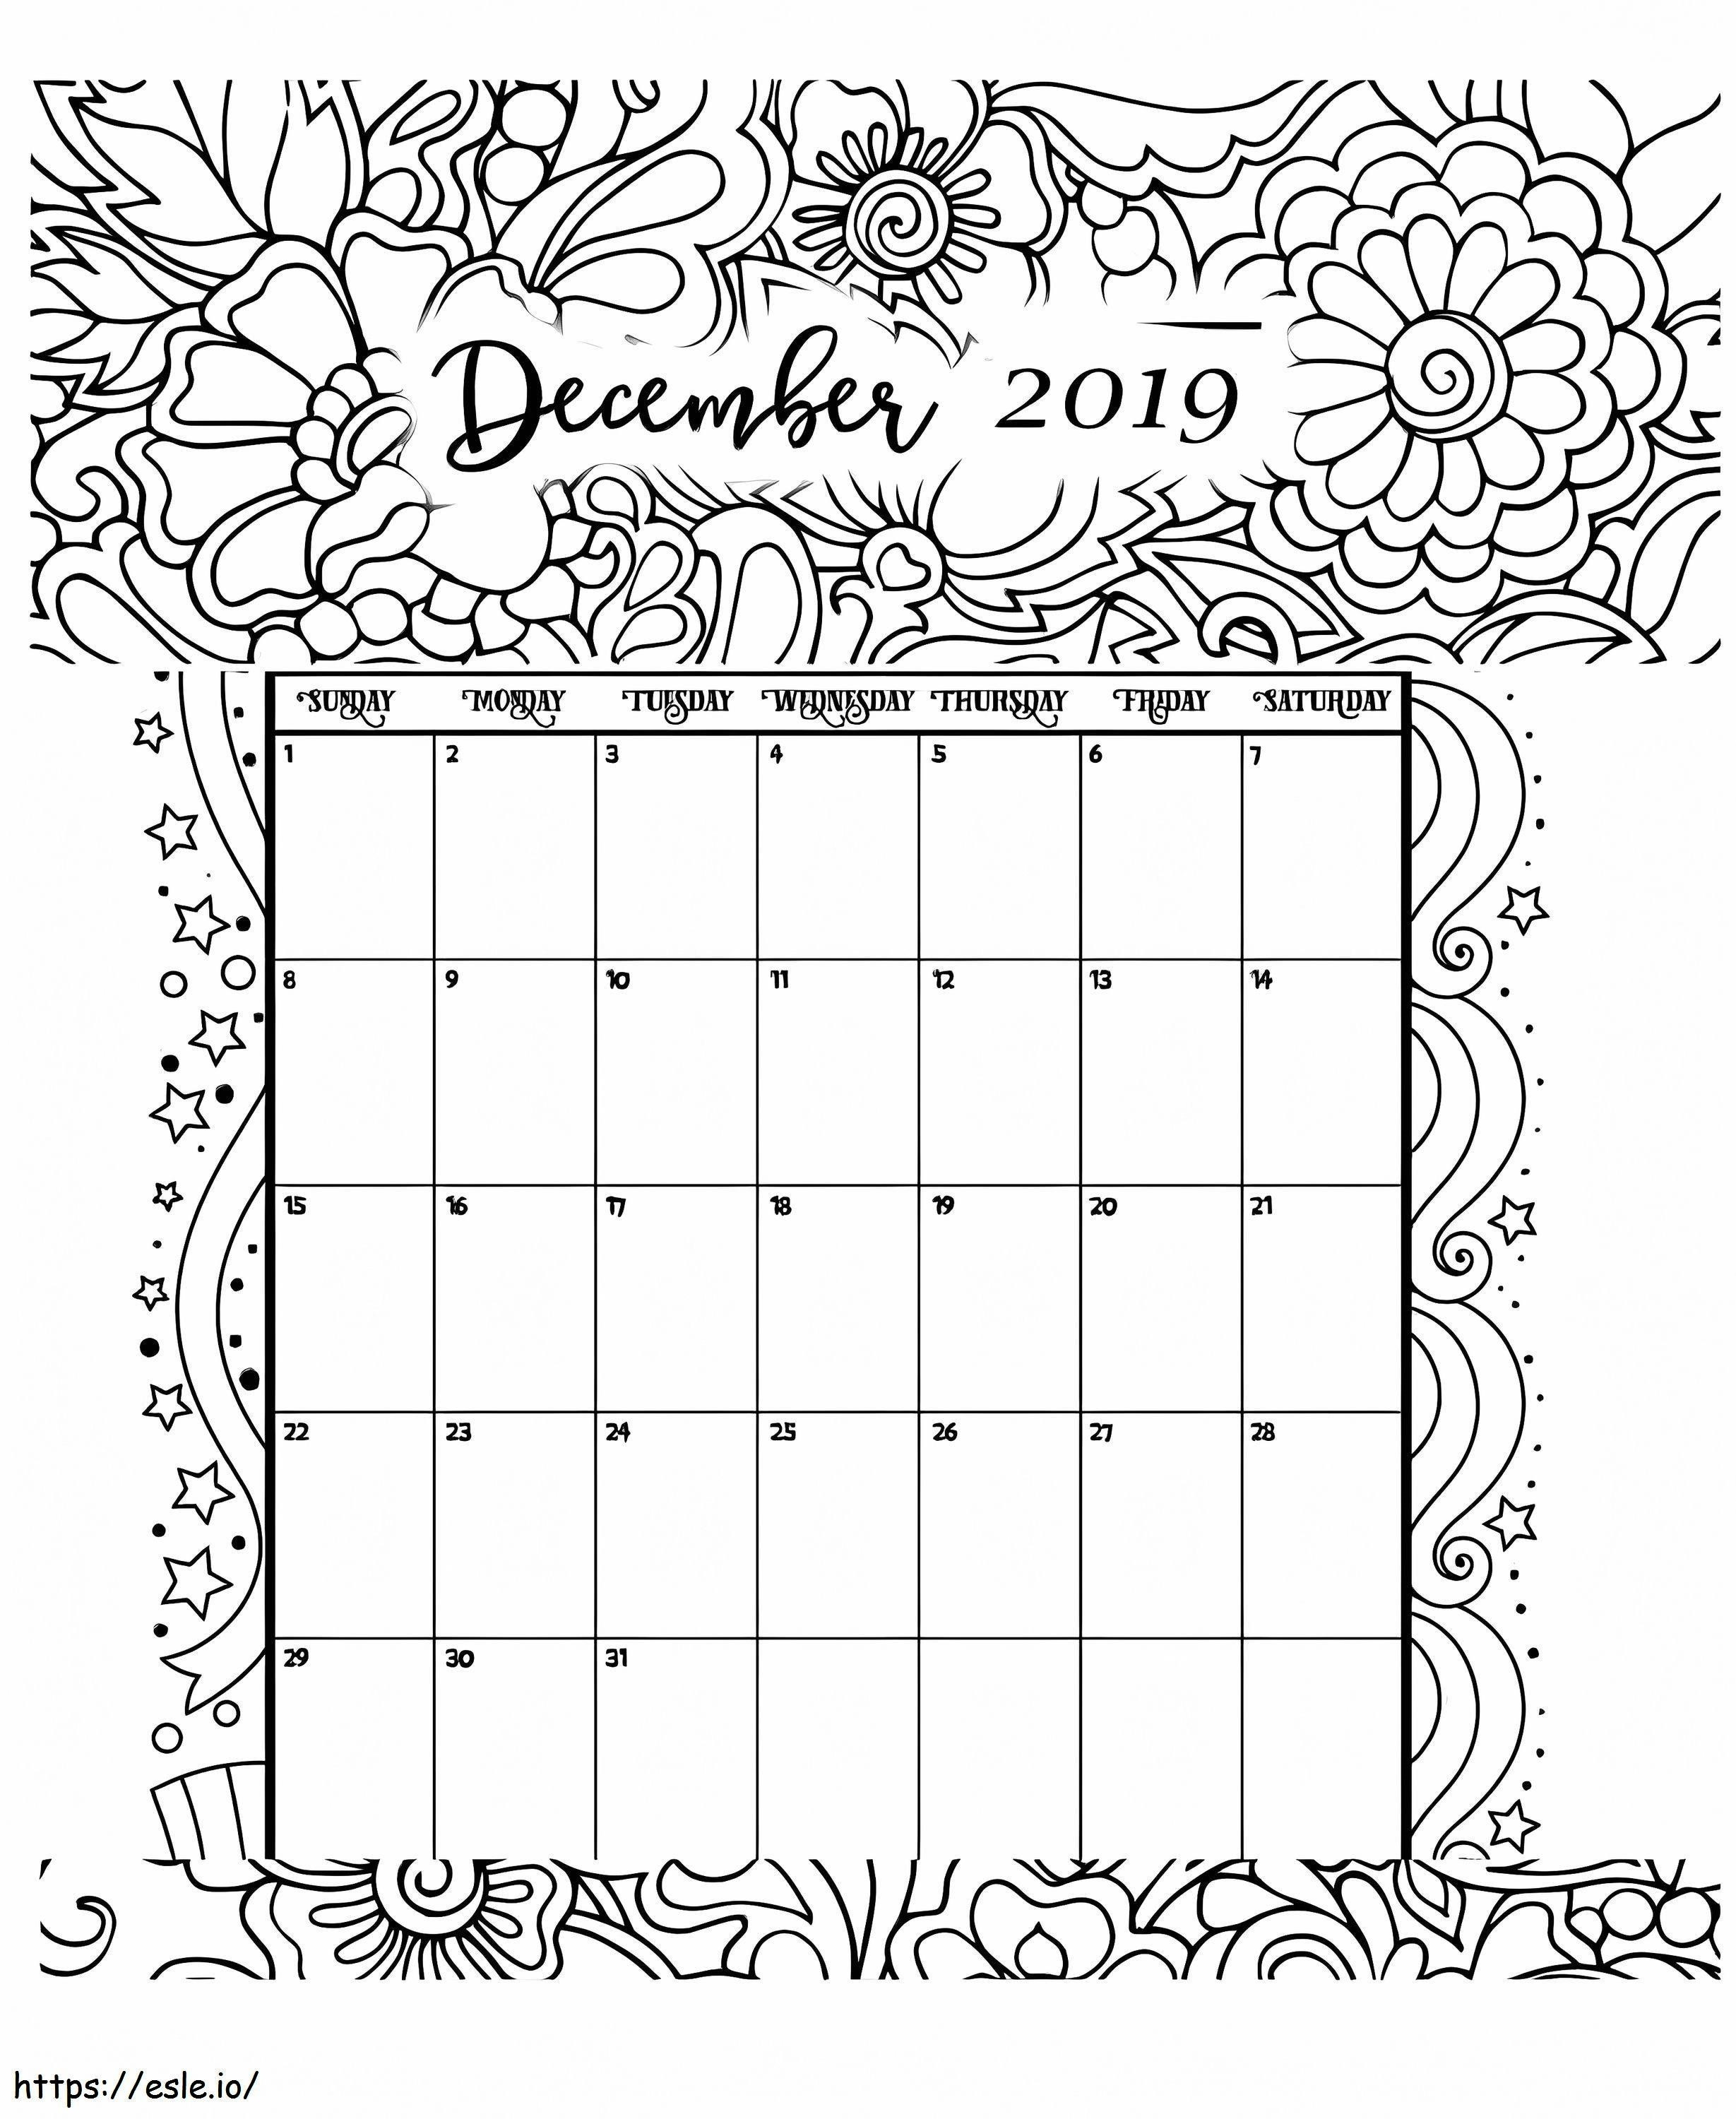 Calendário de dezembro de 2019 para colorir